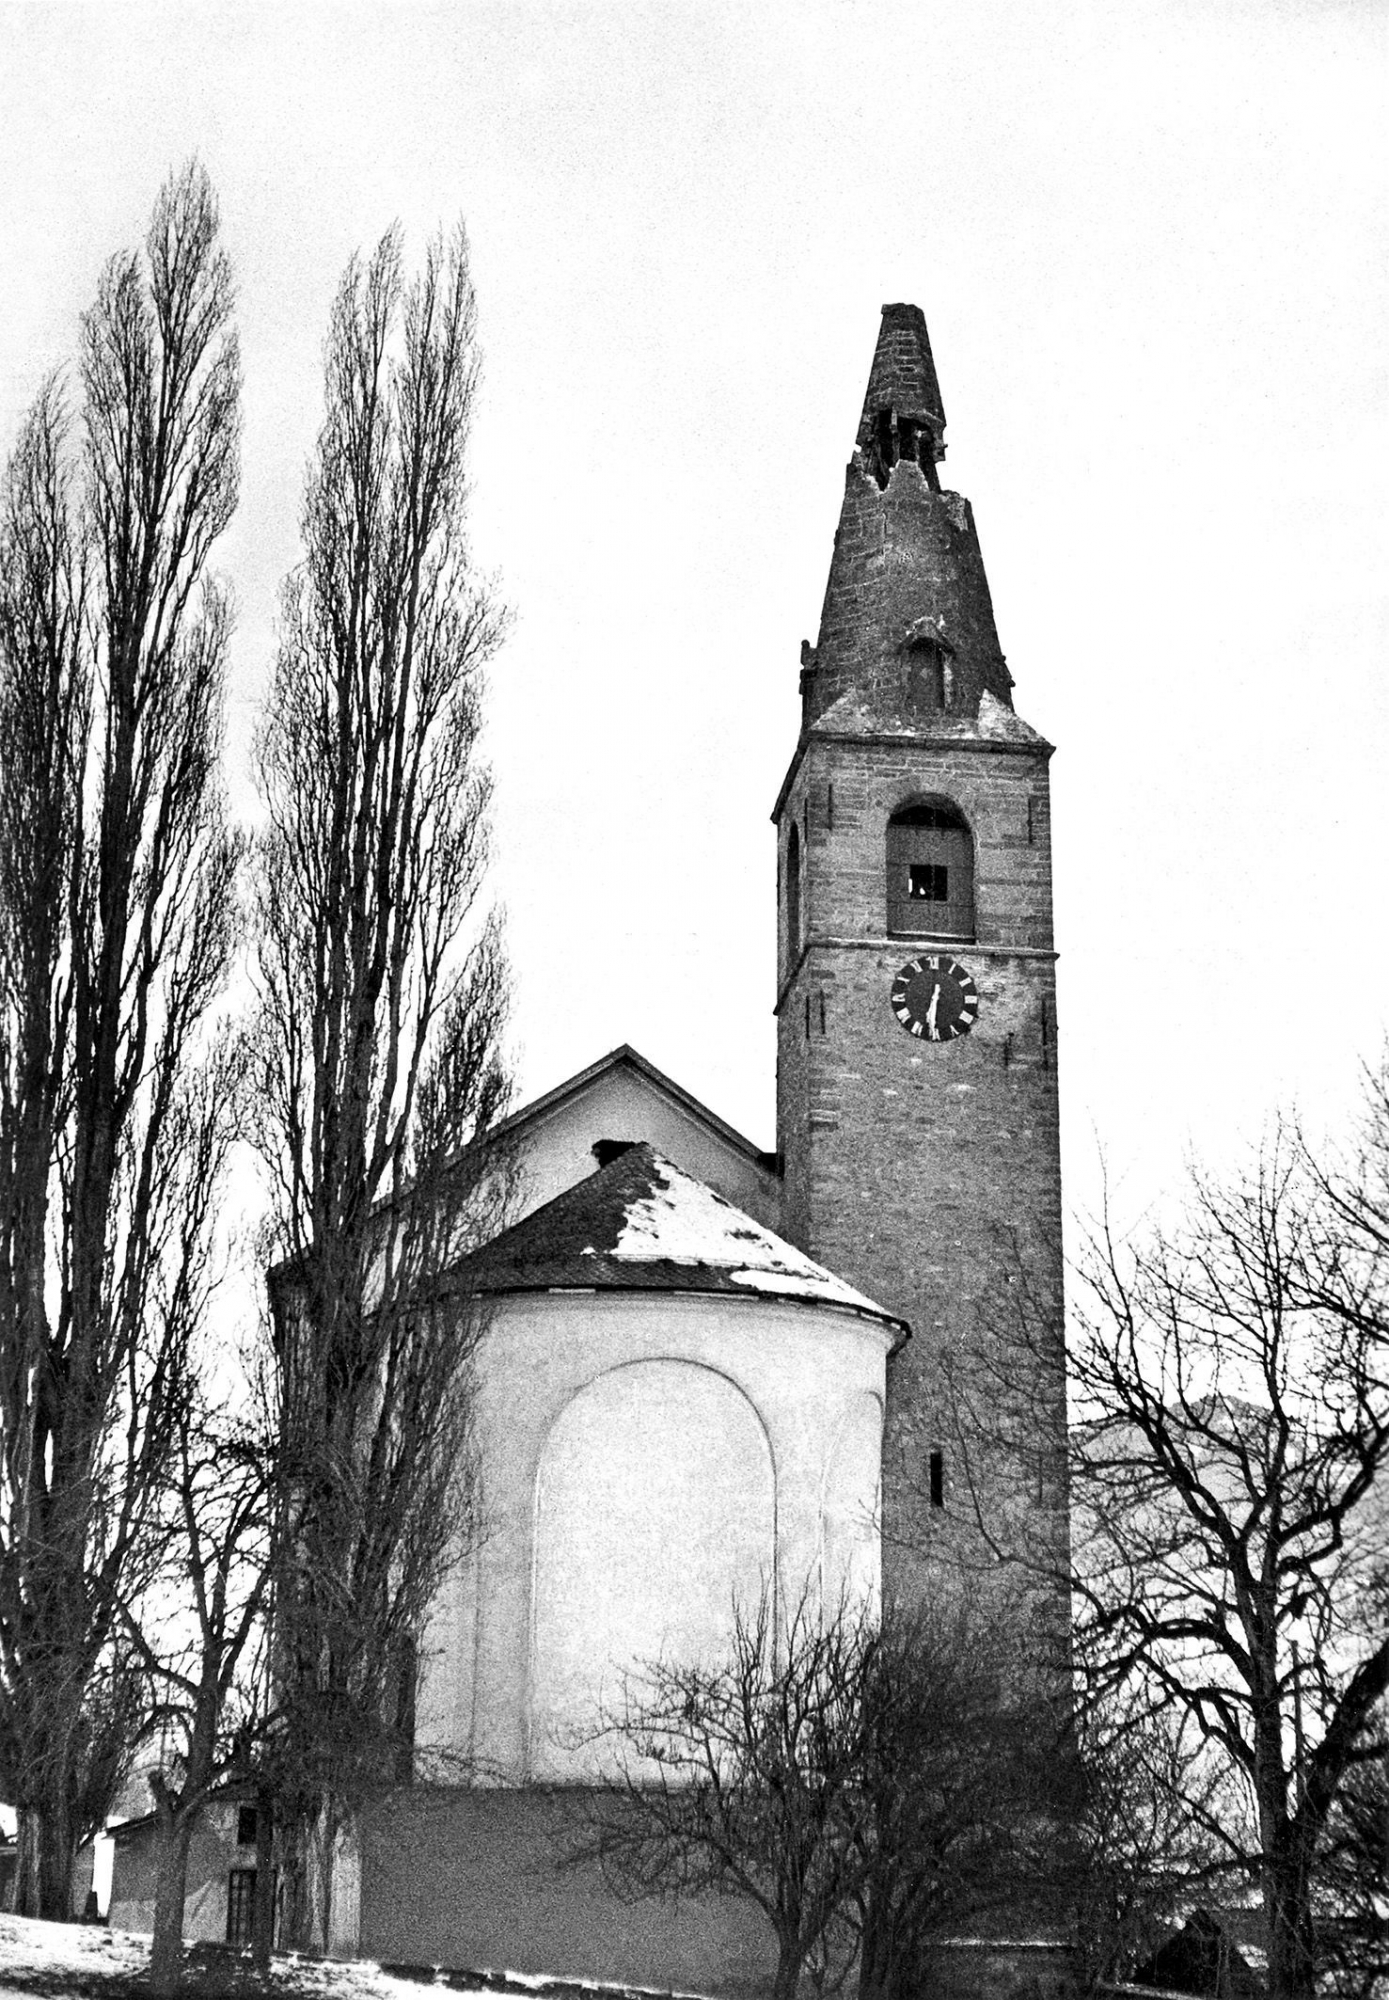 Le clocher de l’église de Chalais endommagé après le séisme du 25 janvier 1946.